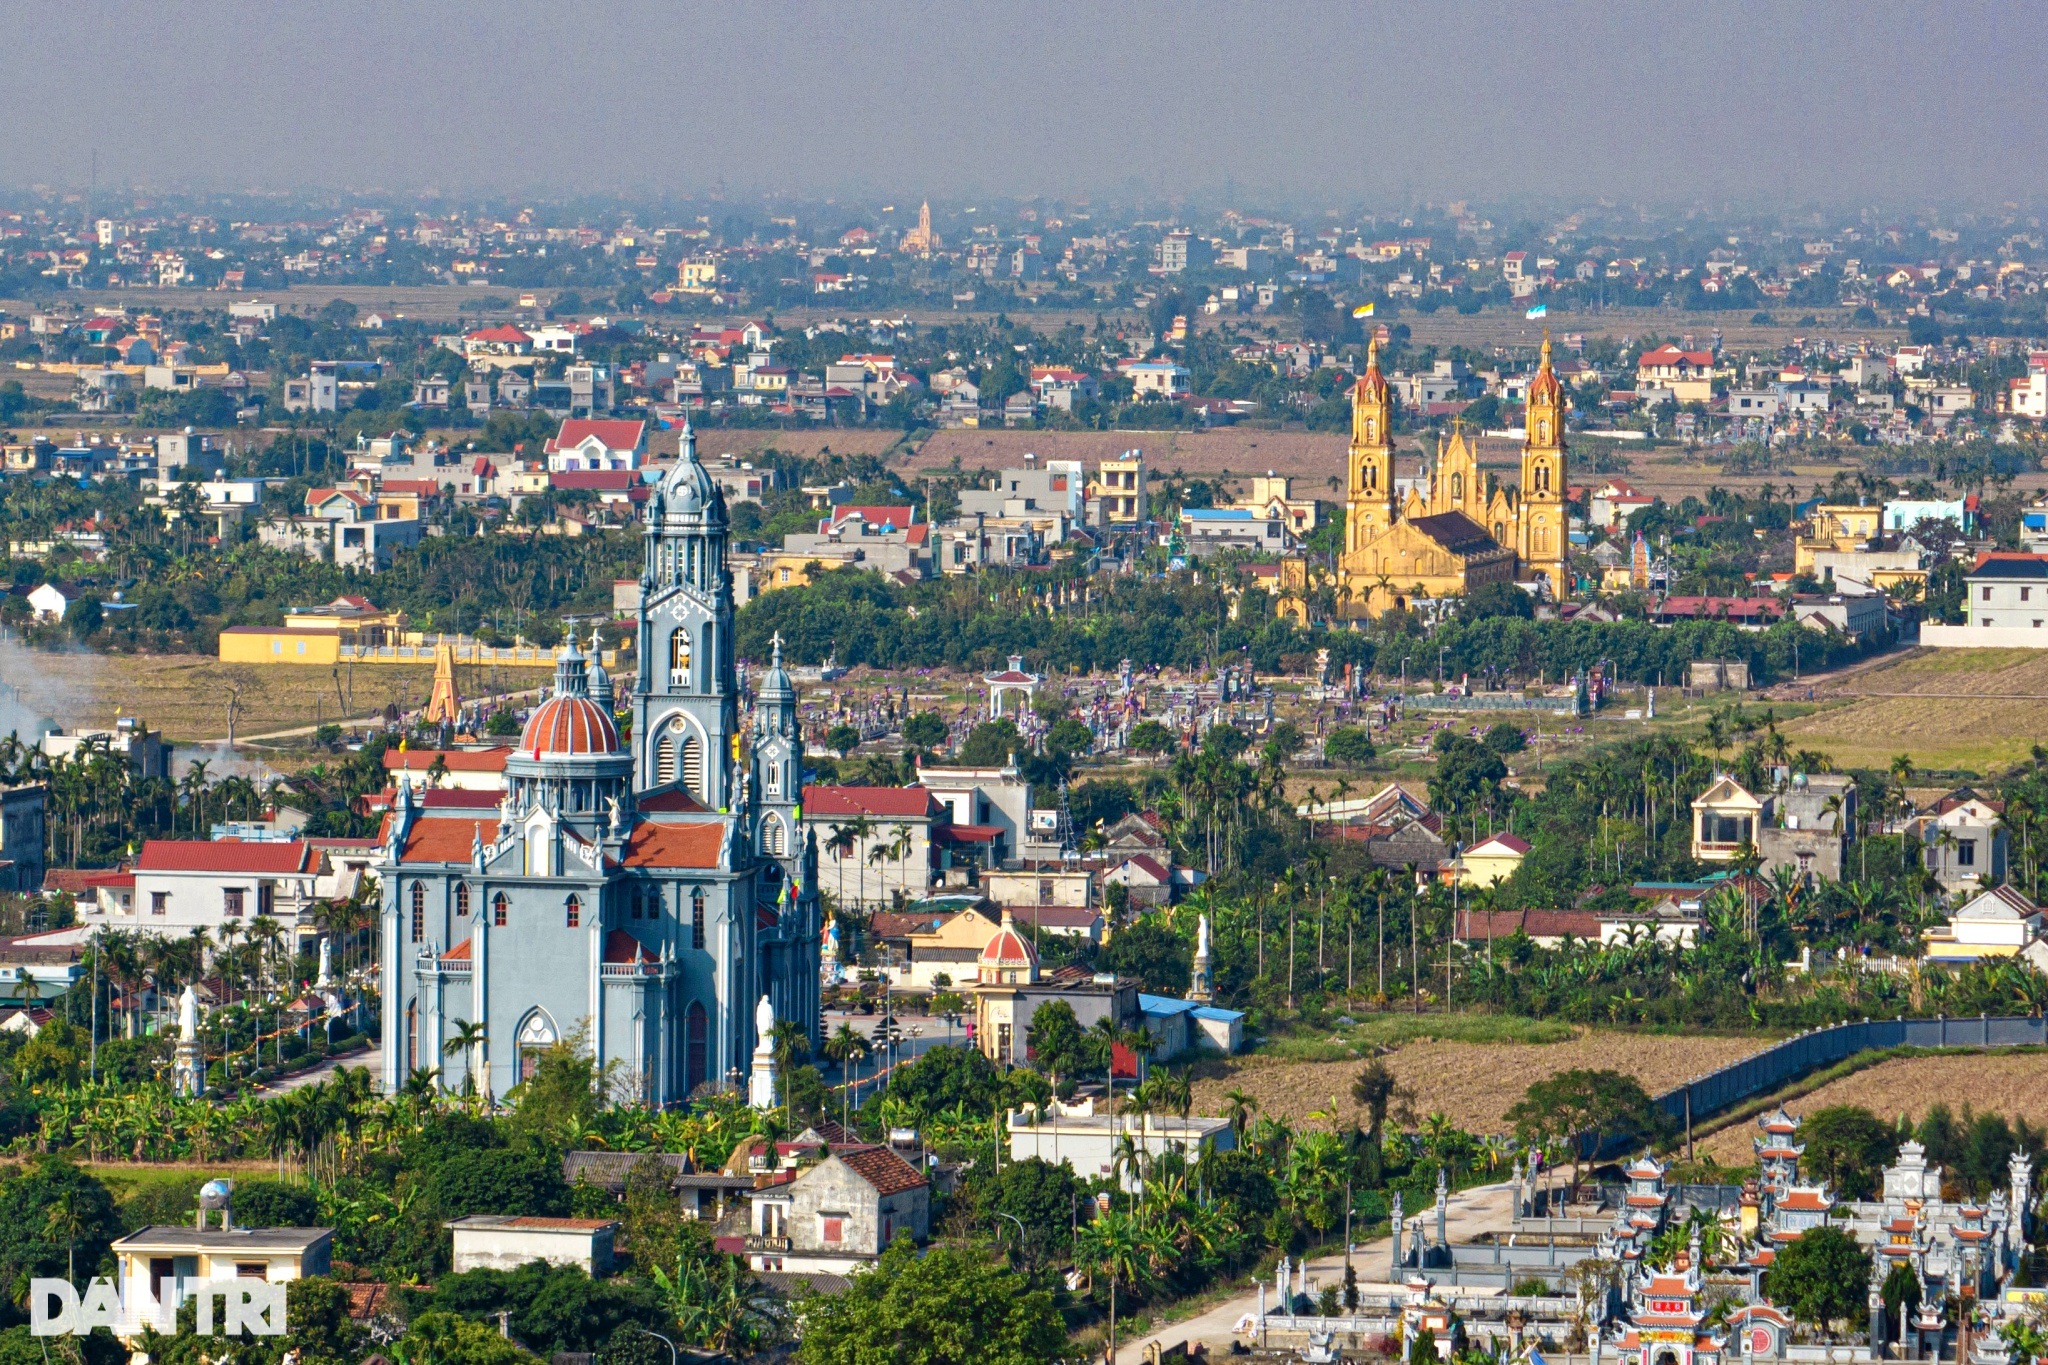 Xứ sở nhiều nhà thờ nhất Việt Nam trang hoàng lộng lẫy đón Giáng sinh - 1